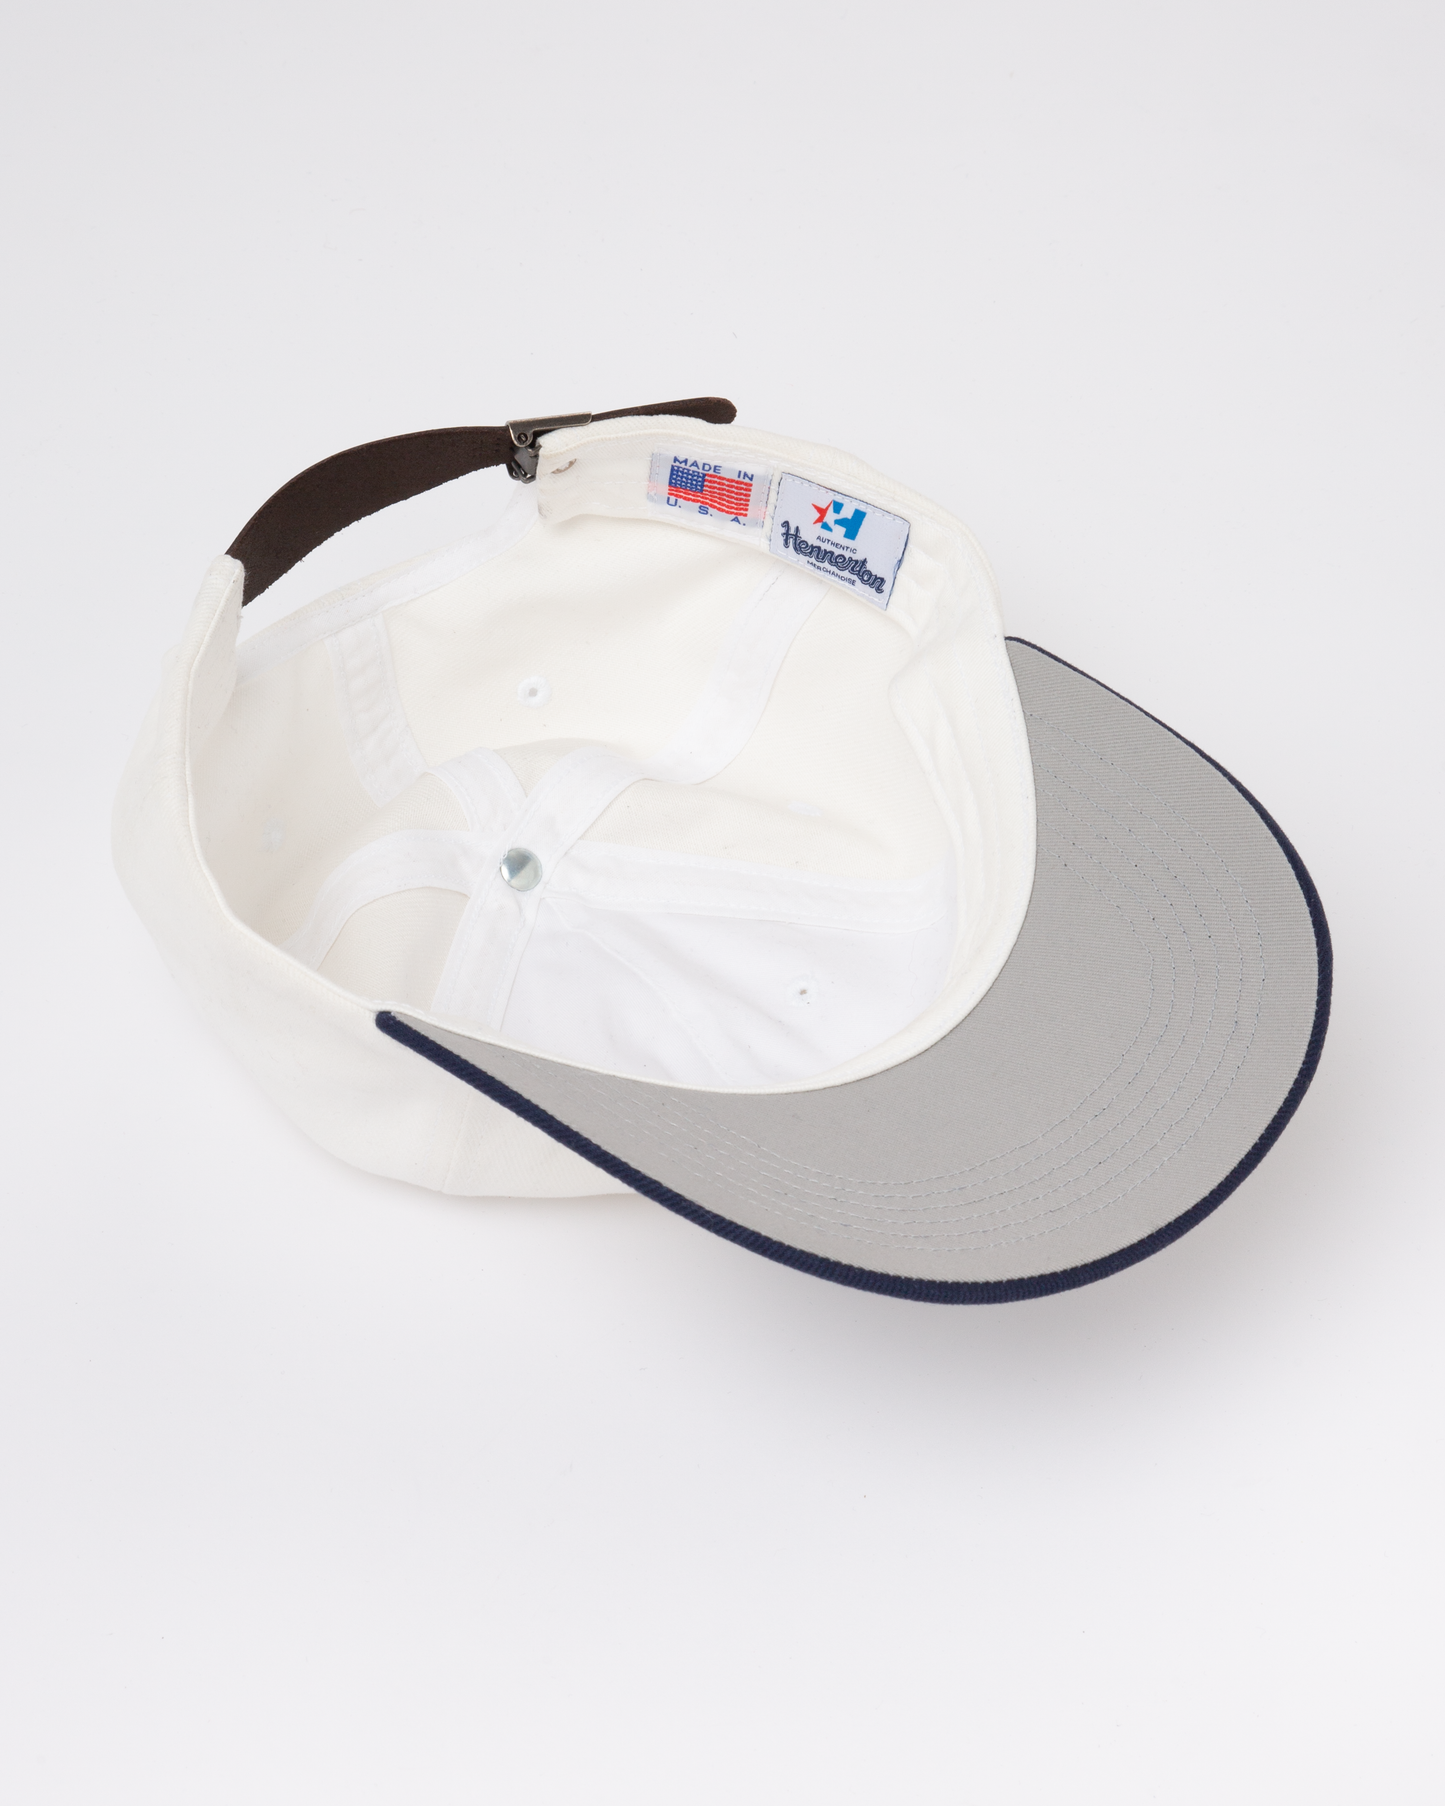 HENNERTON MAJOR LEAGUE CAP: WHITE/NAVY